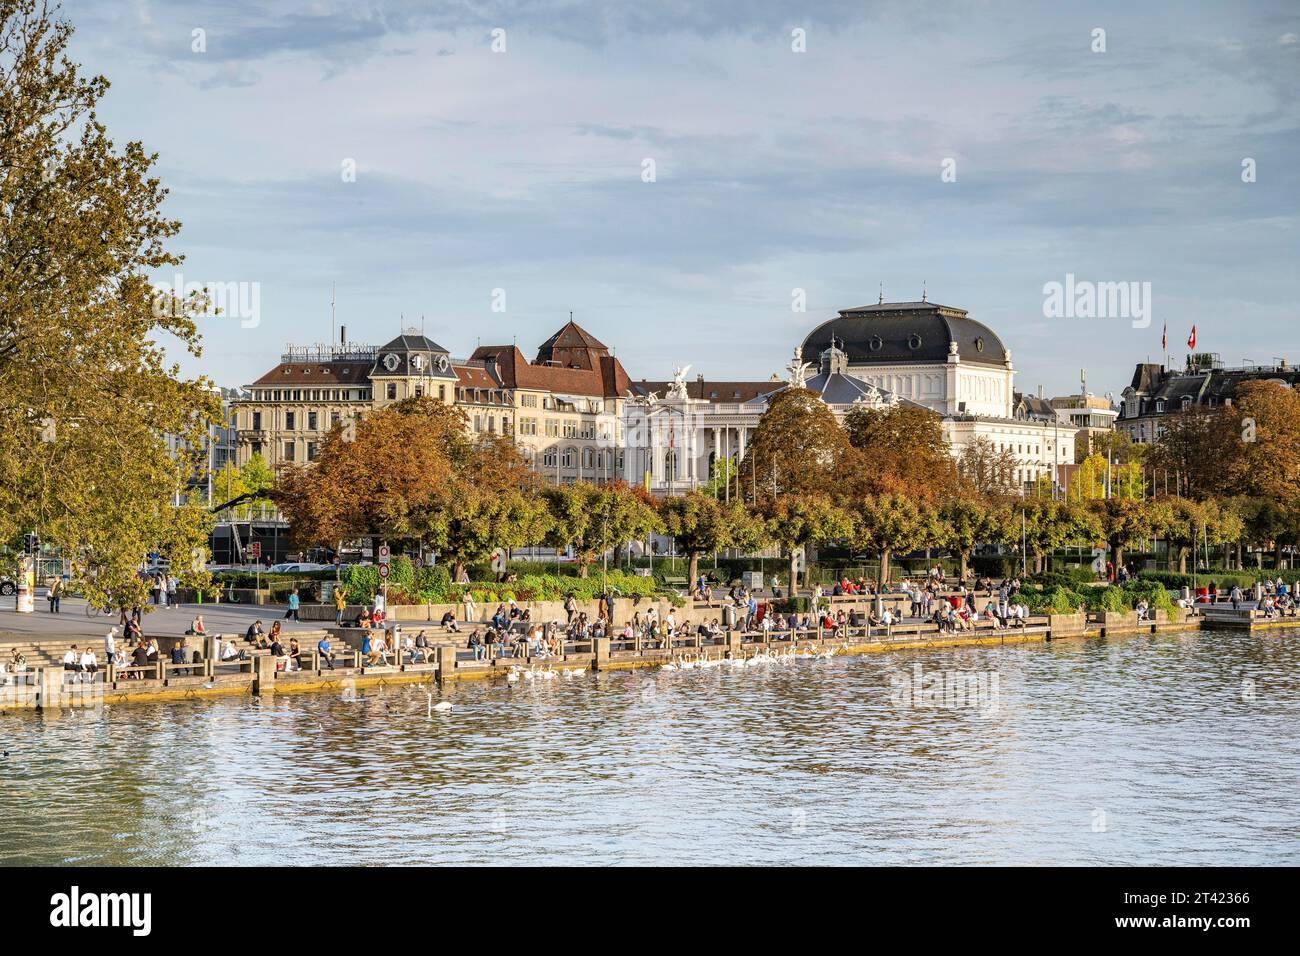 Menschen, die an einem Kai am Ufer des Zürichsees sitzen, Opernhaus im Hintergrund, Zürich, Kanton Zürich, Schweiz Stockfoto